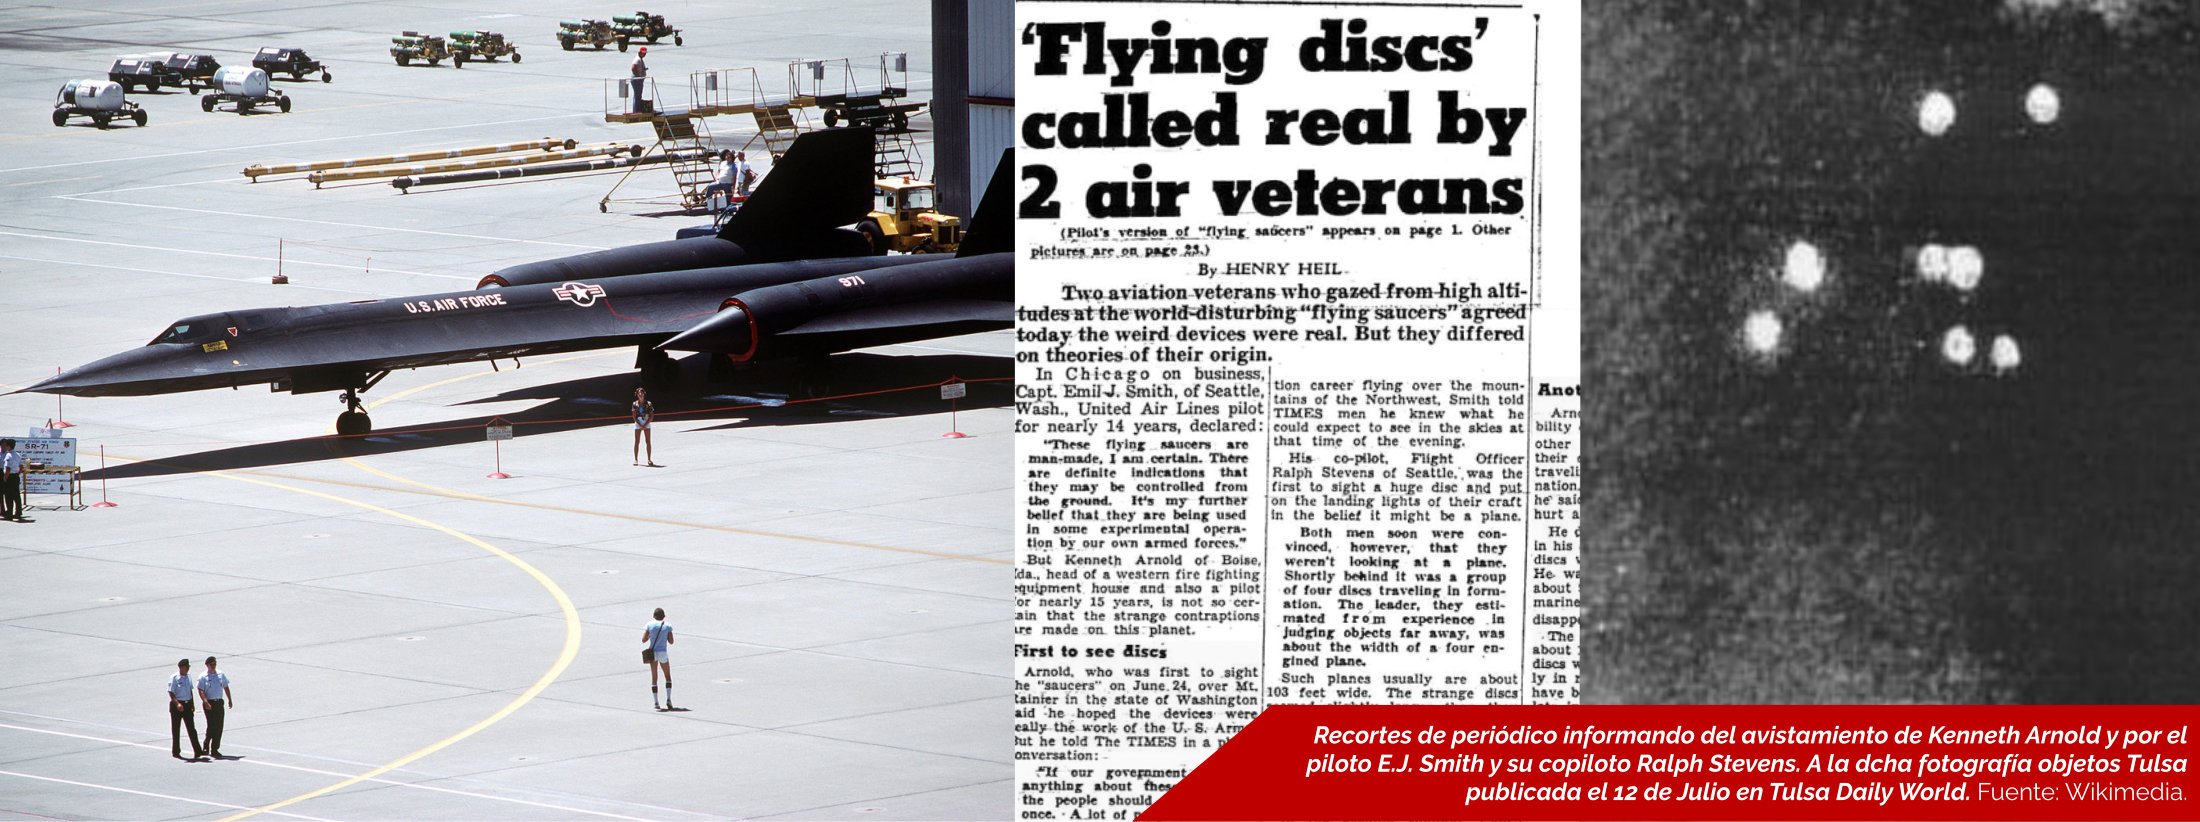 Izqda, el mítico SR-71 en vista lateral en una base aérea. (U.S. National Archives & DVIDS) A la derecha, Reocrtes de periódico informando del avistamiento de Kenneth Arnold y el del piloto E.J. Smith.